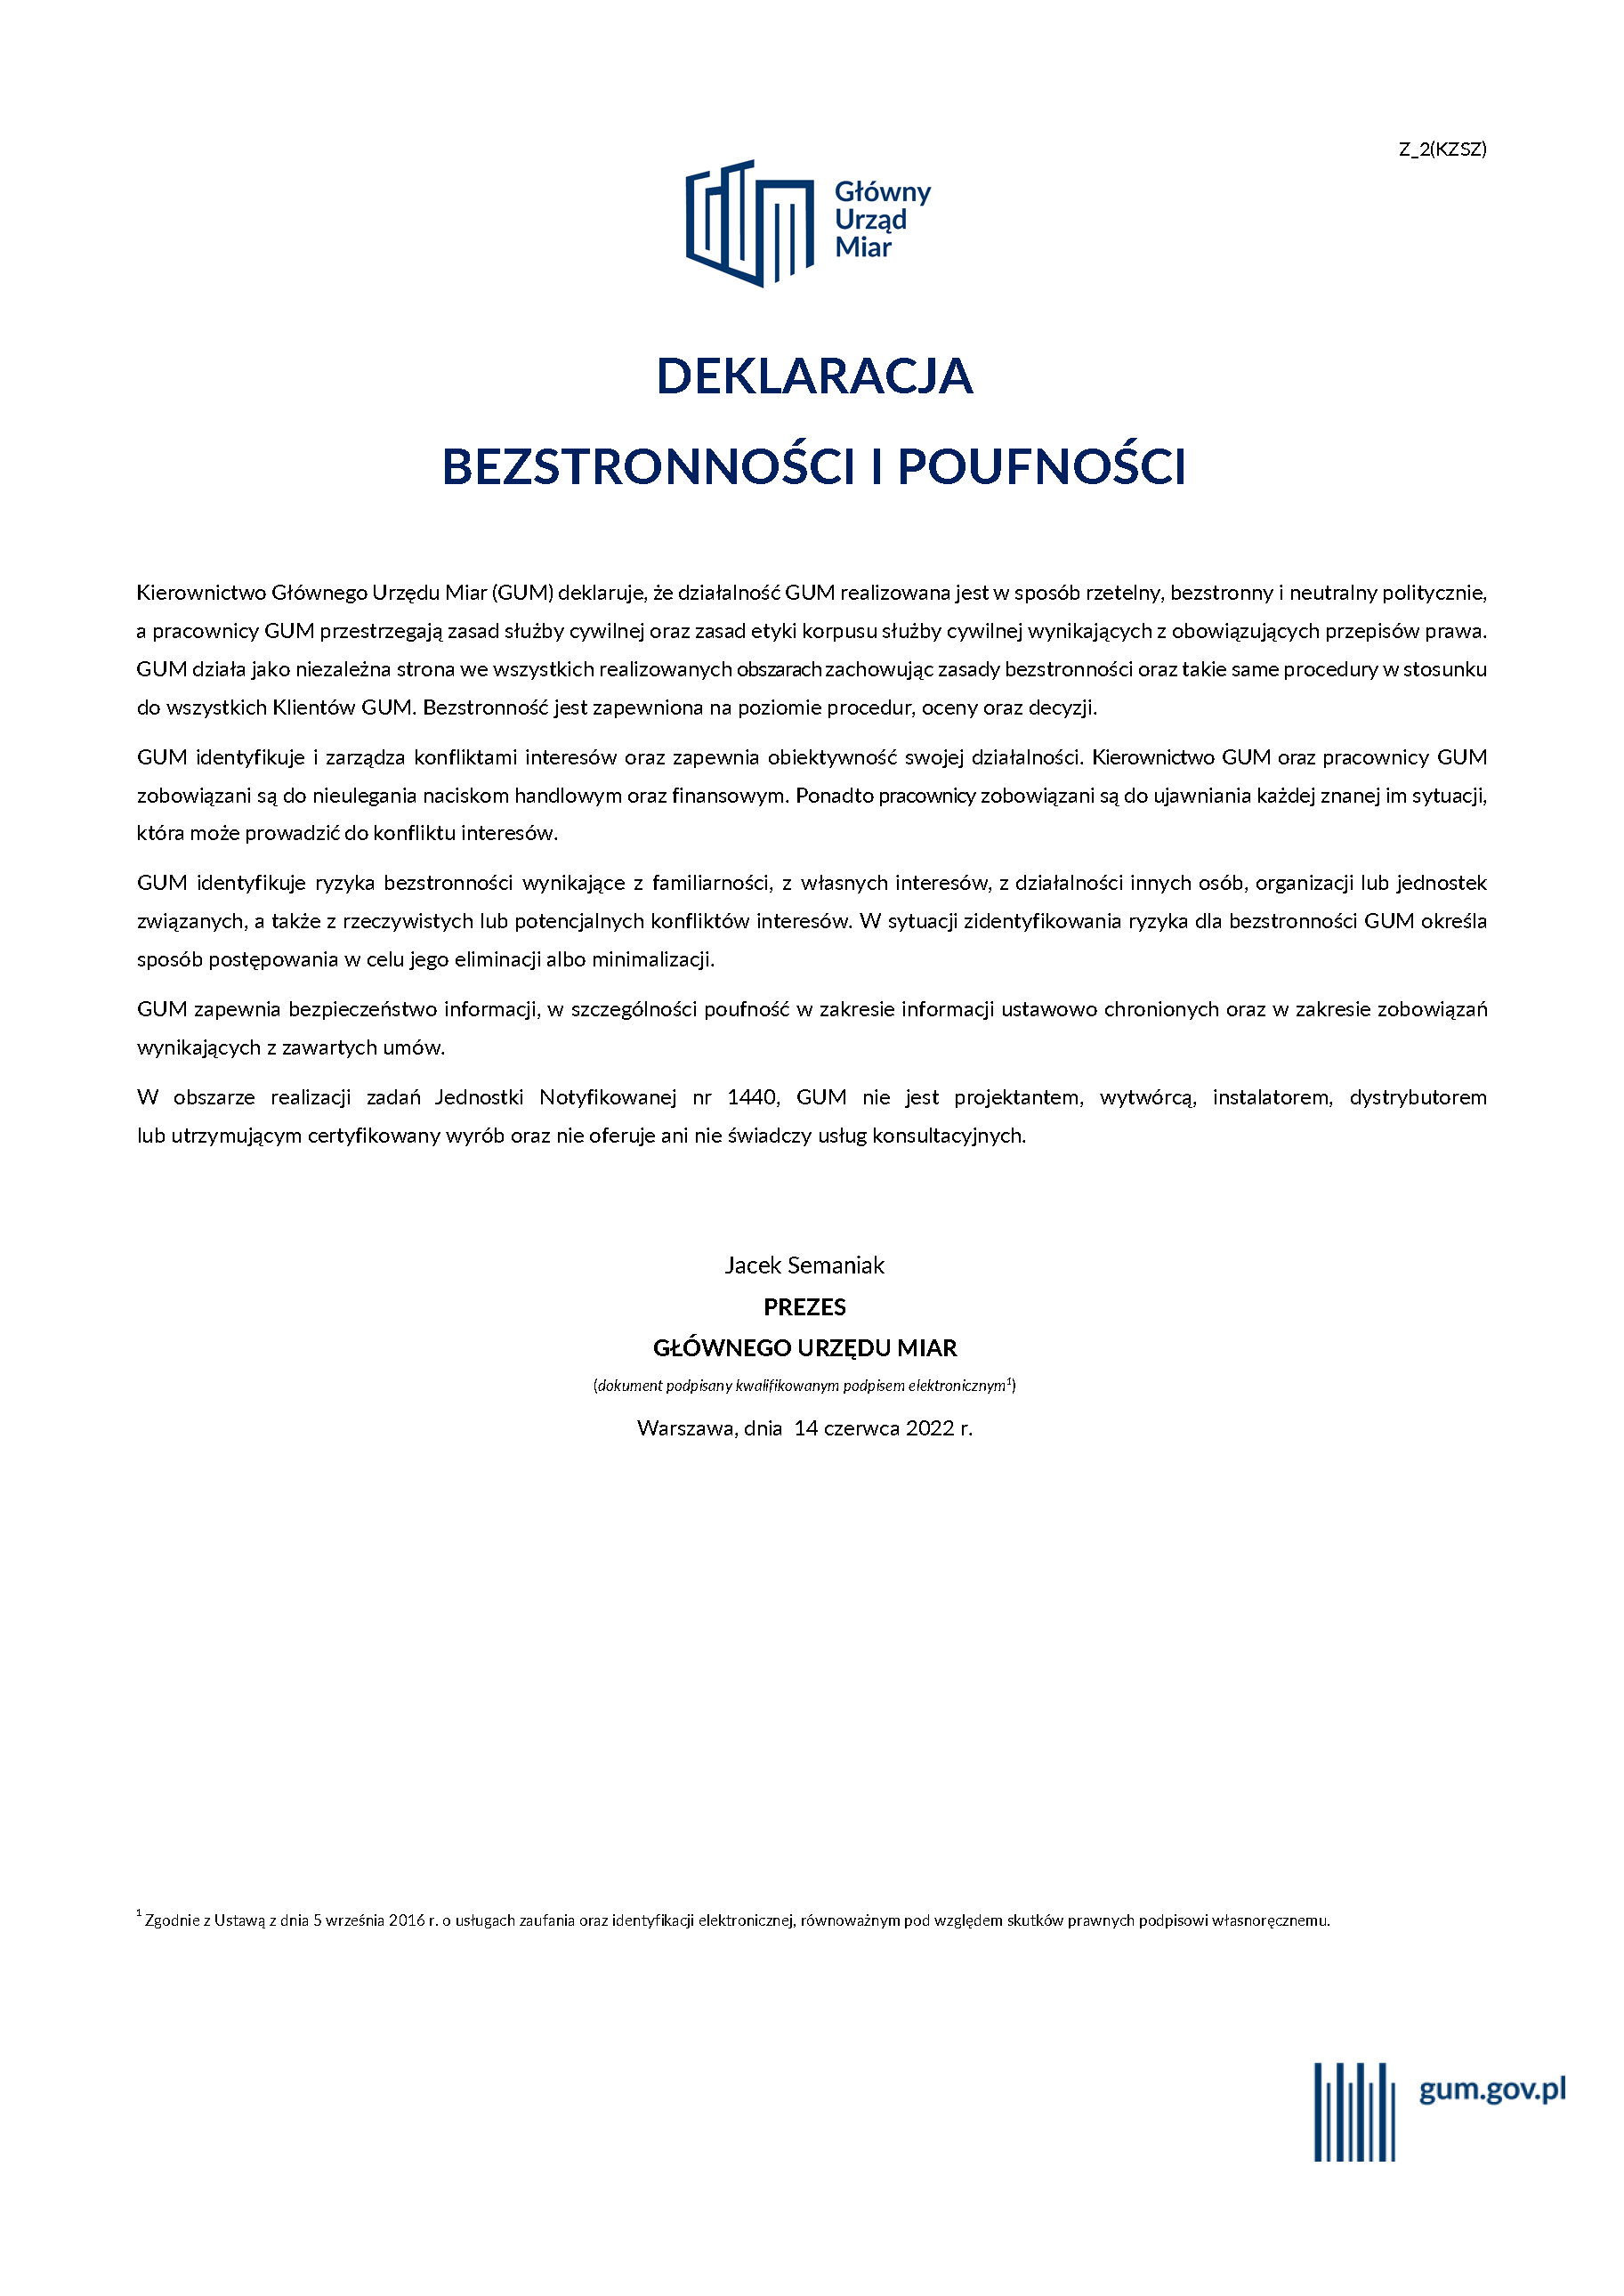 Deklaracja bezstronności i poufności w Głównym Urzędzie Miar - podpisany przez Prezesa GUM dokument. Do zdjęcia podlinkowany jest czytalny pdf.